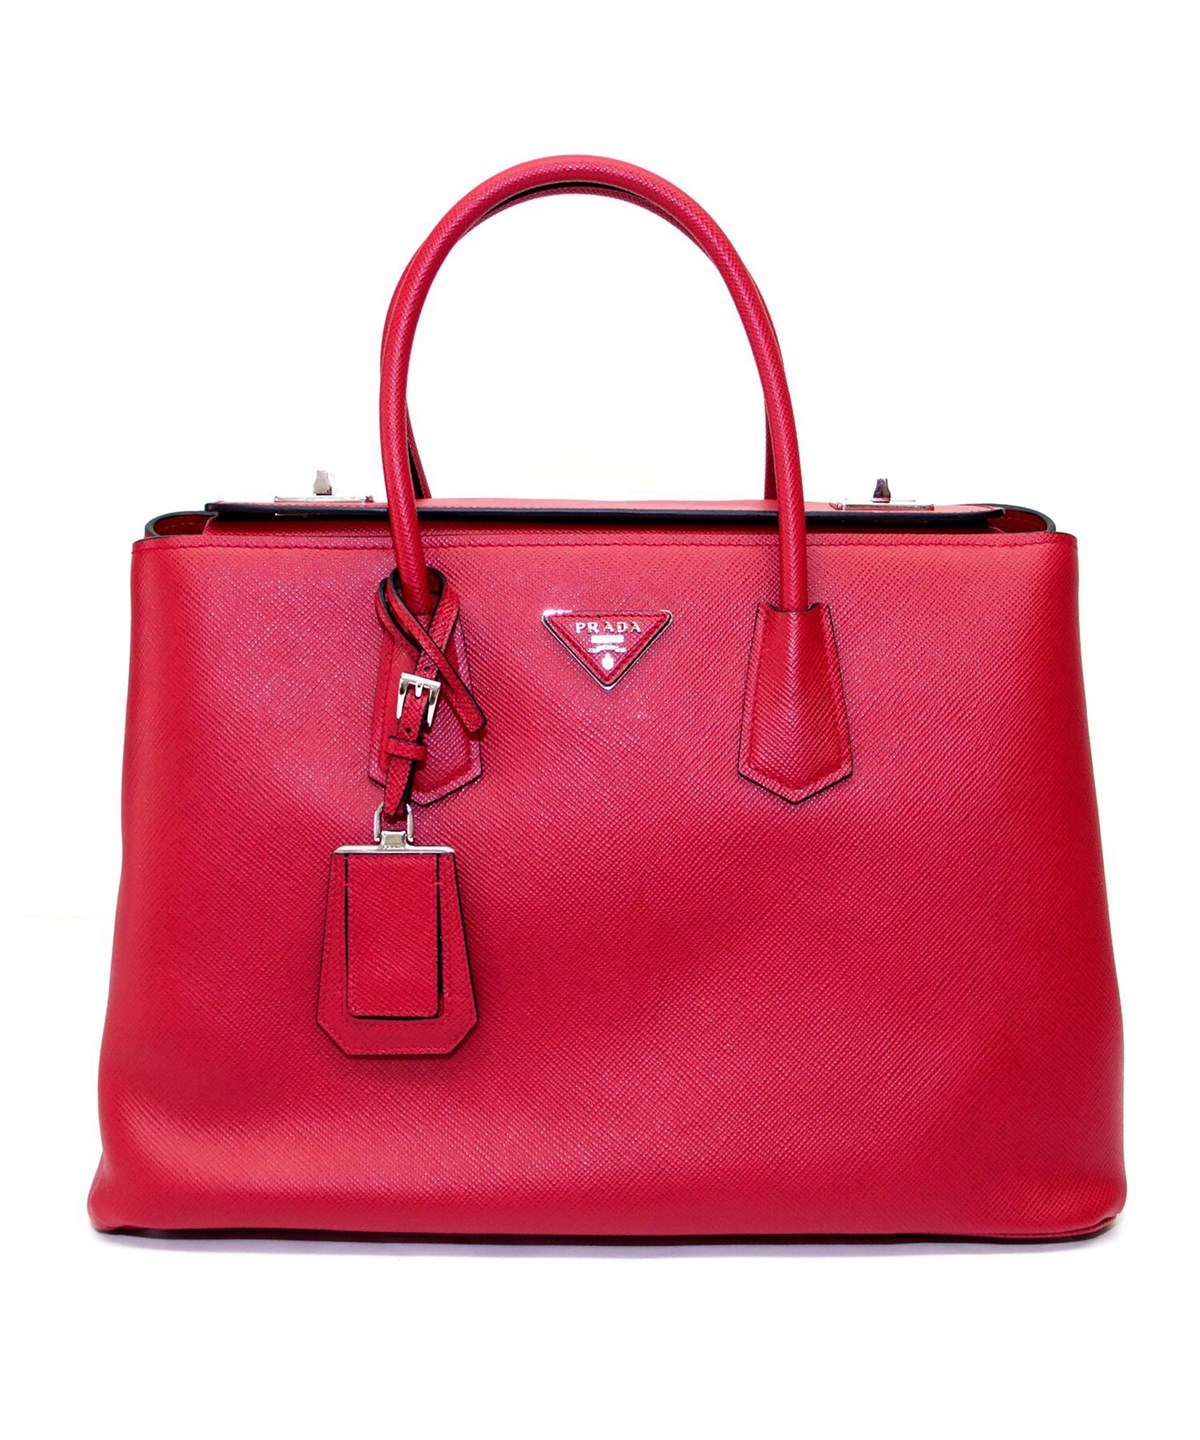 Prada Saffiano Leather Tote Handbag Fuoco' In Red | ModeSens